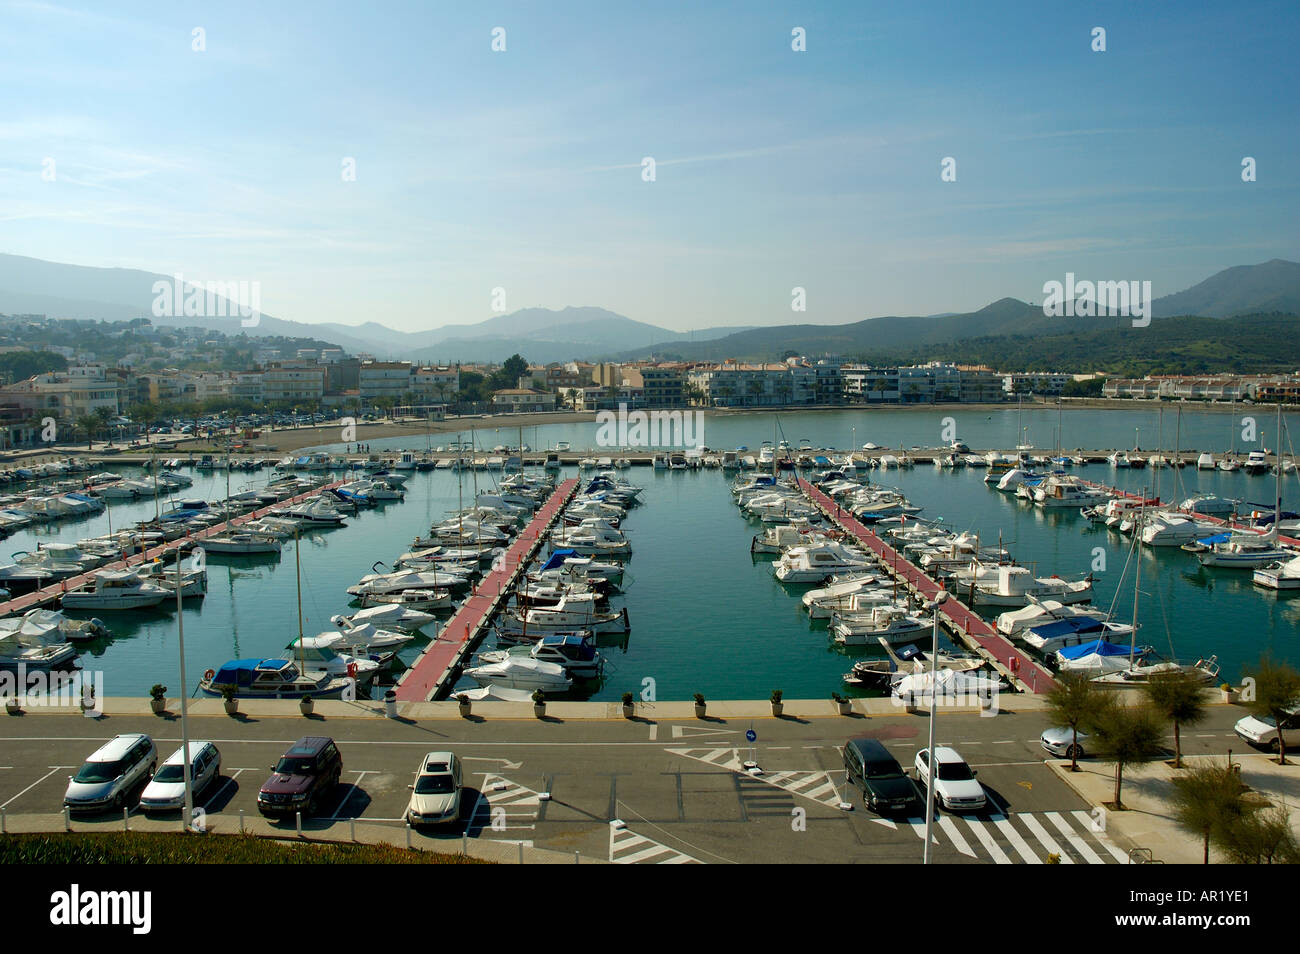 Le port de plaisance de Llanca dans le Nord de l'Espagne Banque D'Images